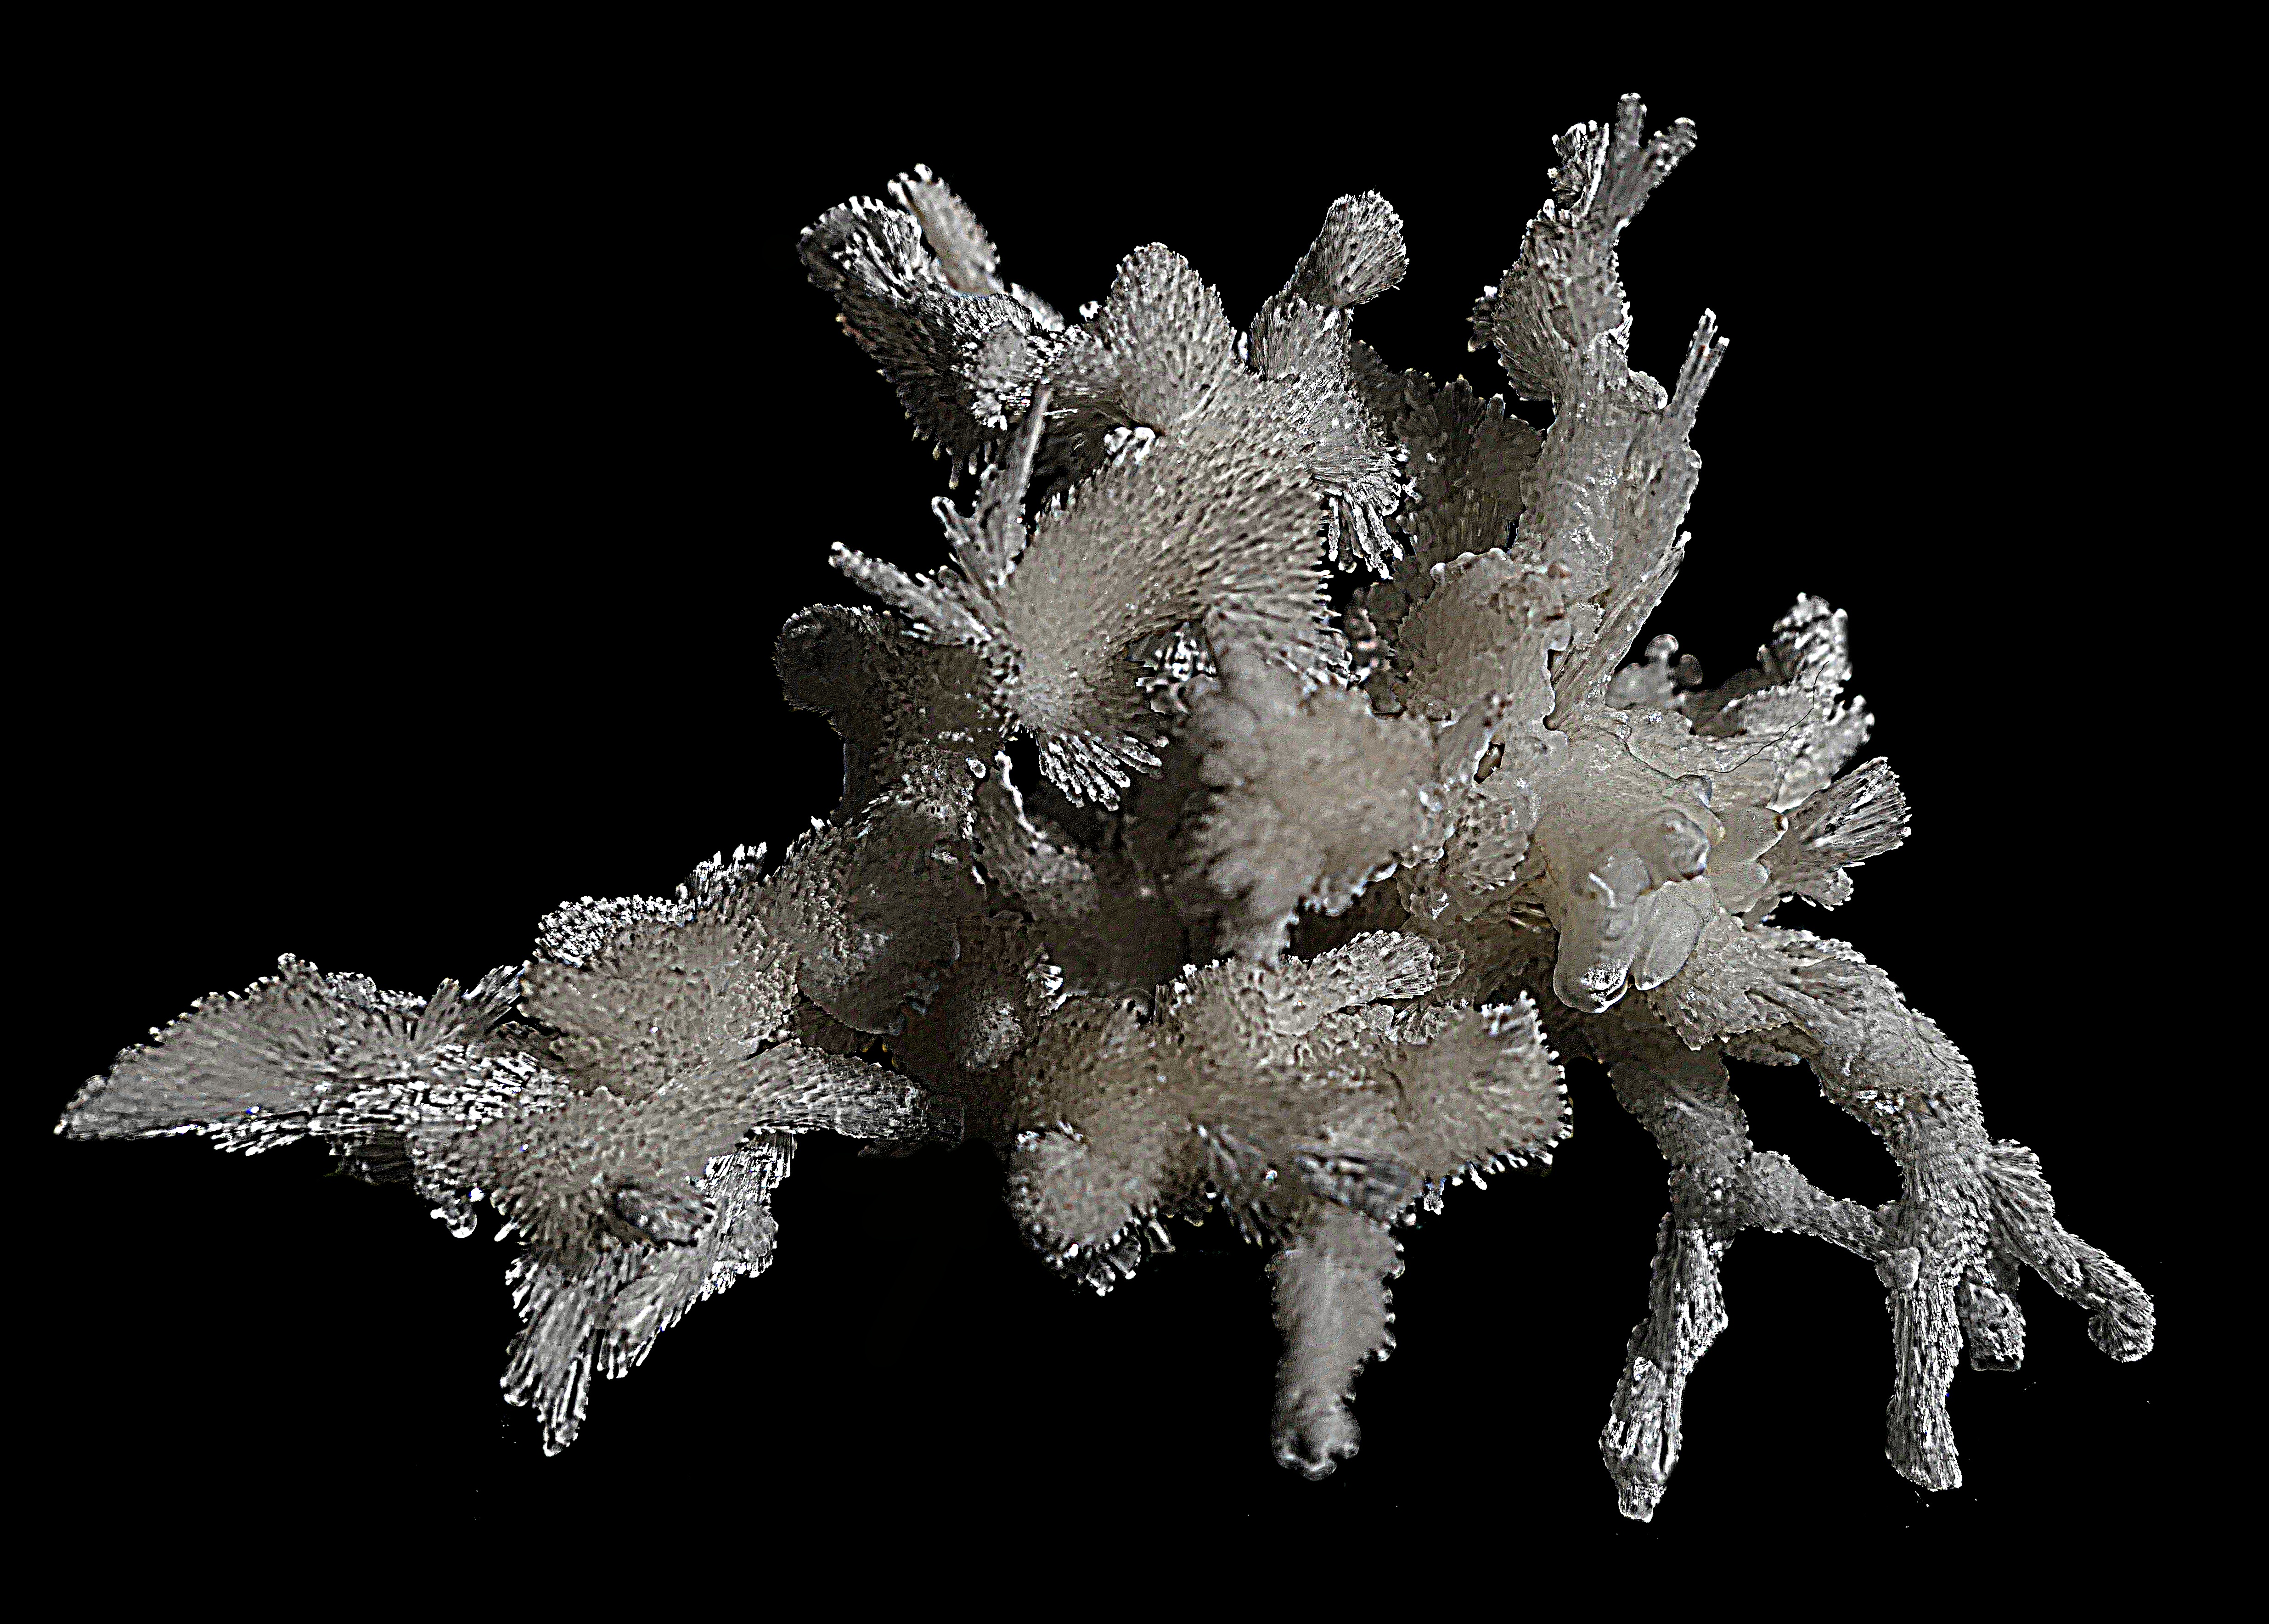 Арагонит (карбонат Са) пещерный. Ю.Туркмения. Размер 7 см. Фото Морошкина В.В.